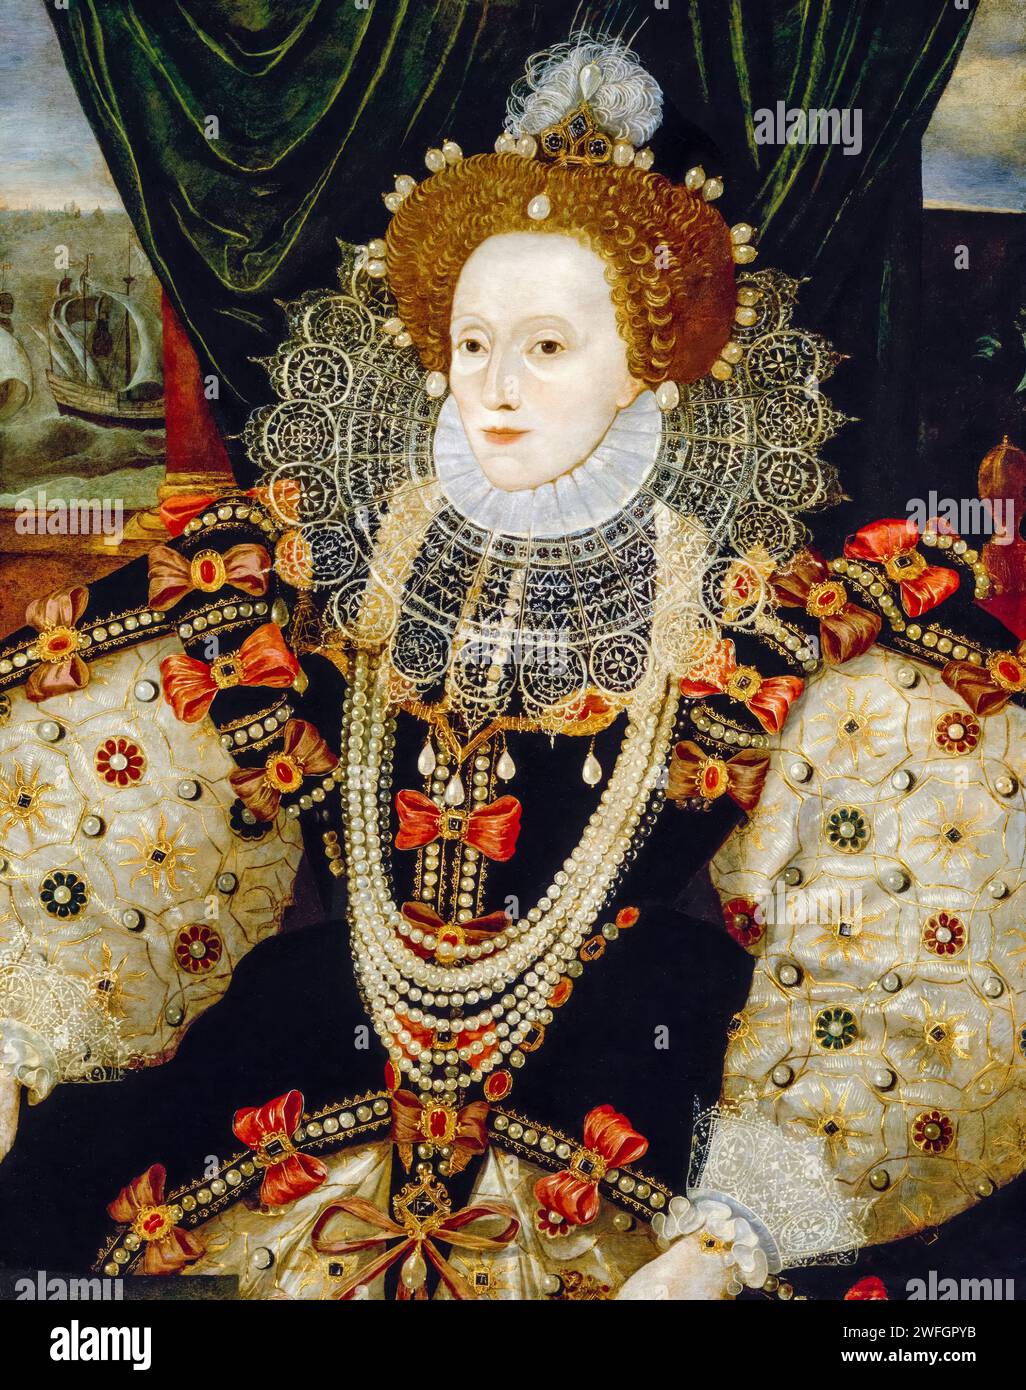 Élisabeth Ire d'Angleterre (1533-1603), reine d'Angleterre et d'Irlande (1558-1603), portrait Armada, peinture à l'huile sur panneau, vers 1588 Banque D'Images